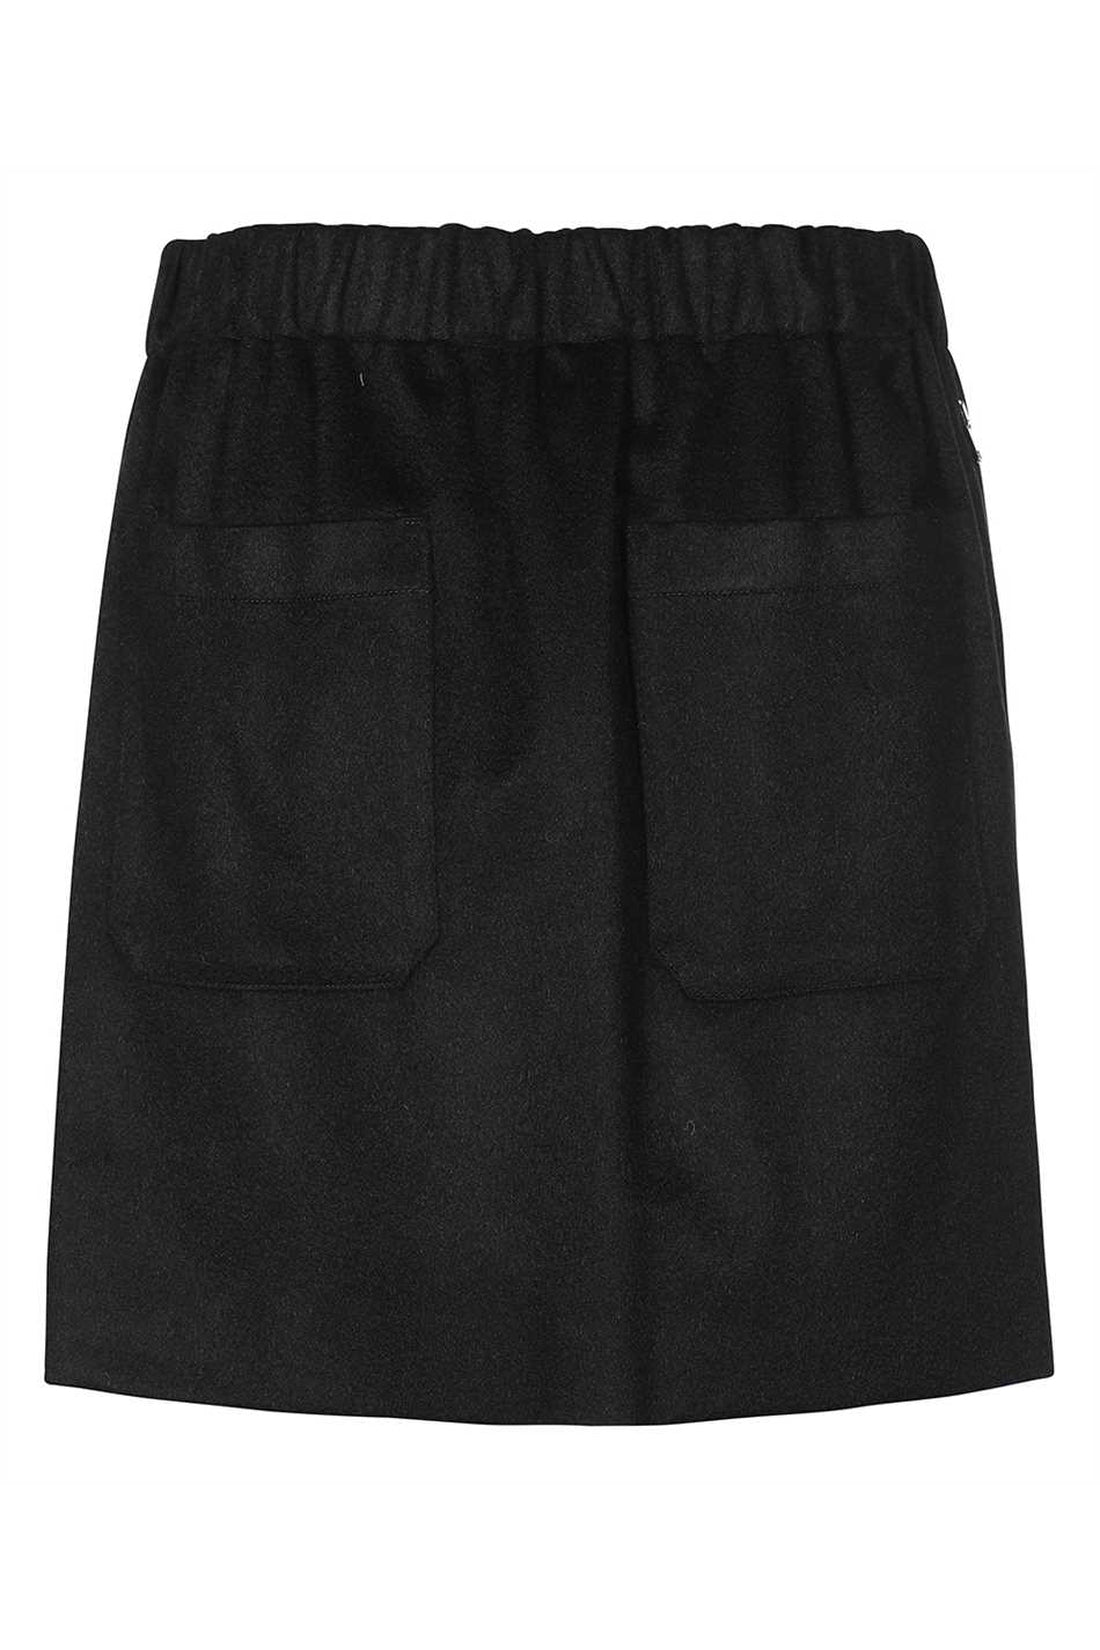 Max Mara-OUTLET-SALE-Ottavia mini skirt-ARCHIVIST